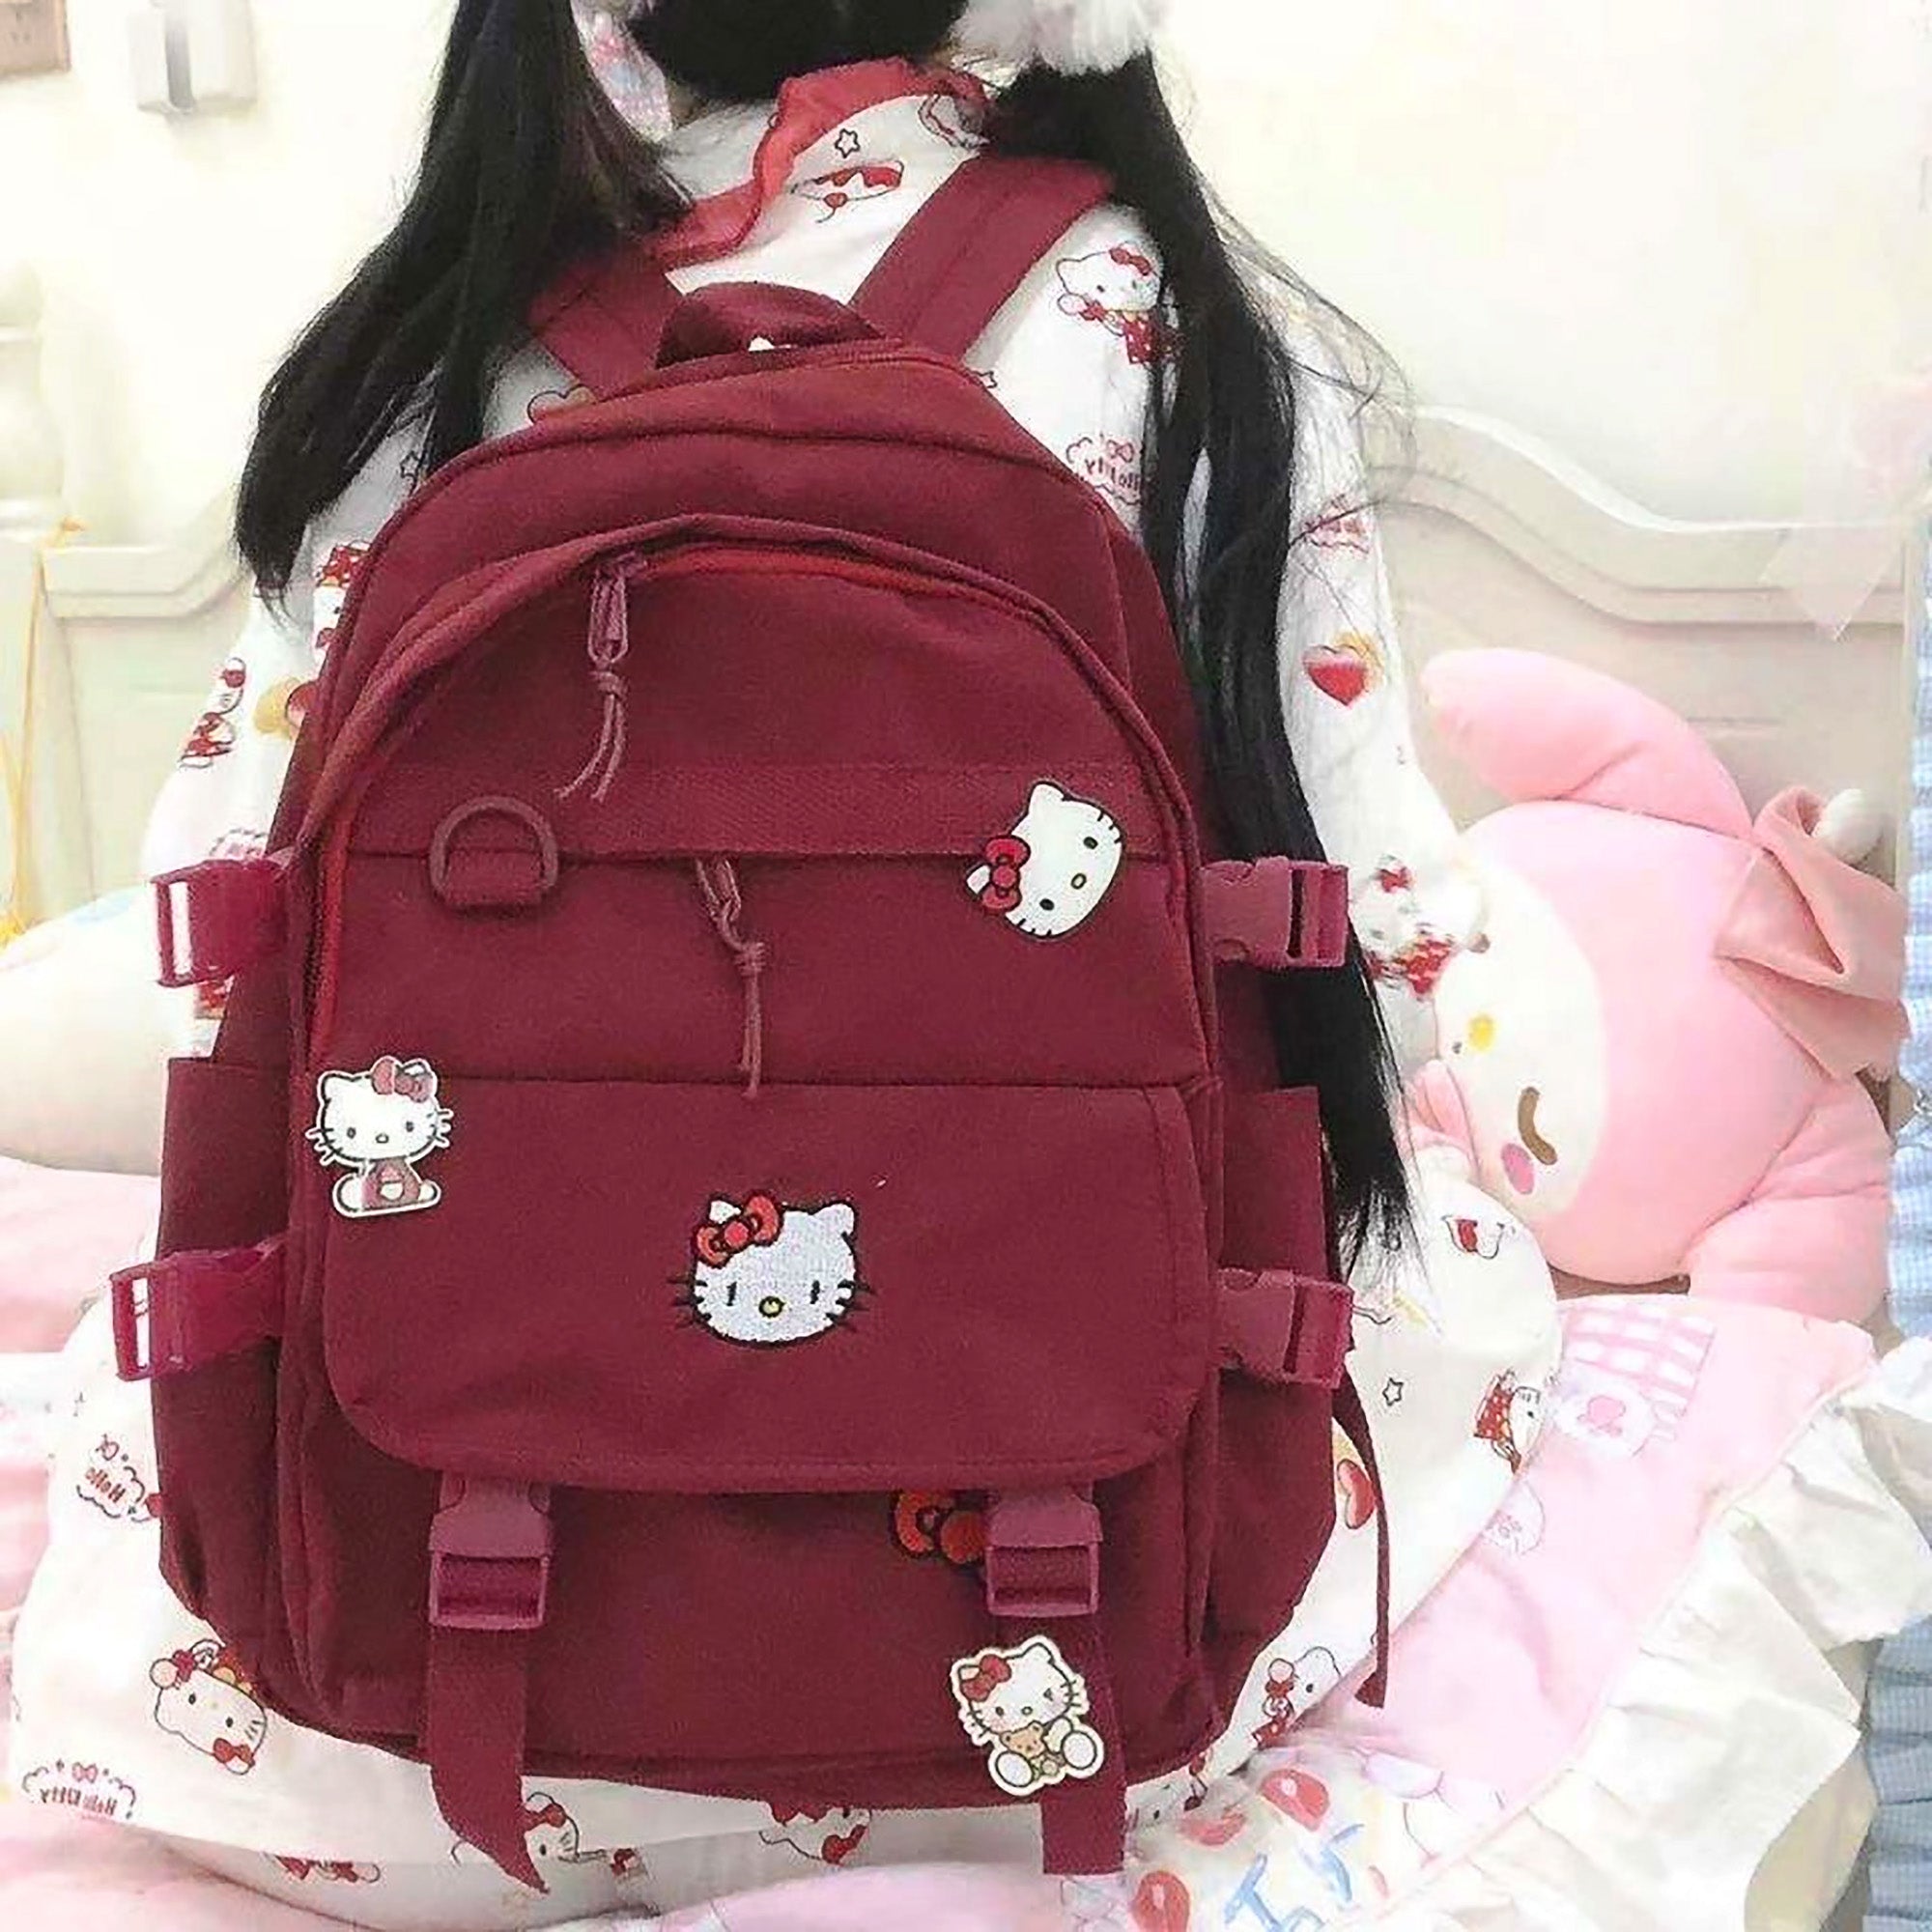 Stitch Backpack Girl Kids Teenagers Cute Backpacks for School B84